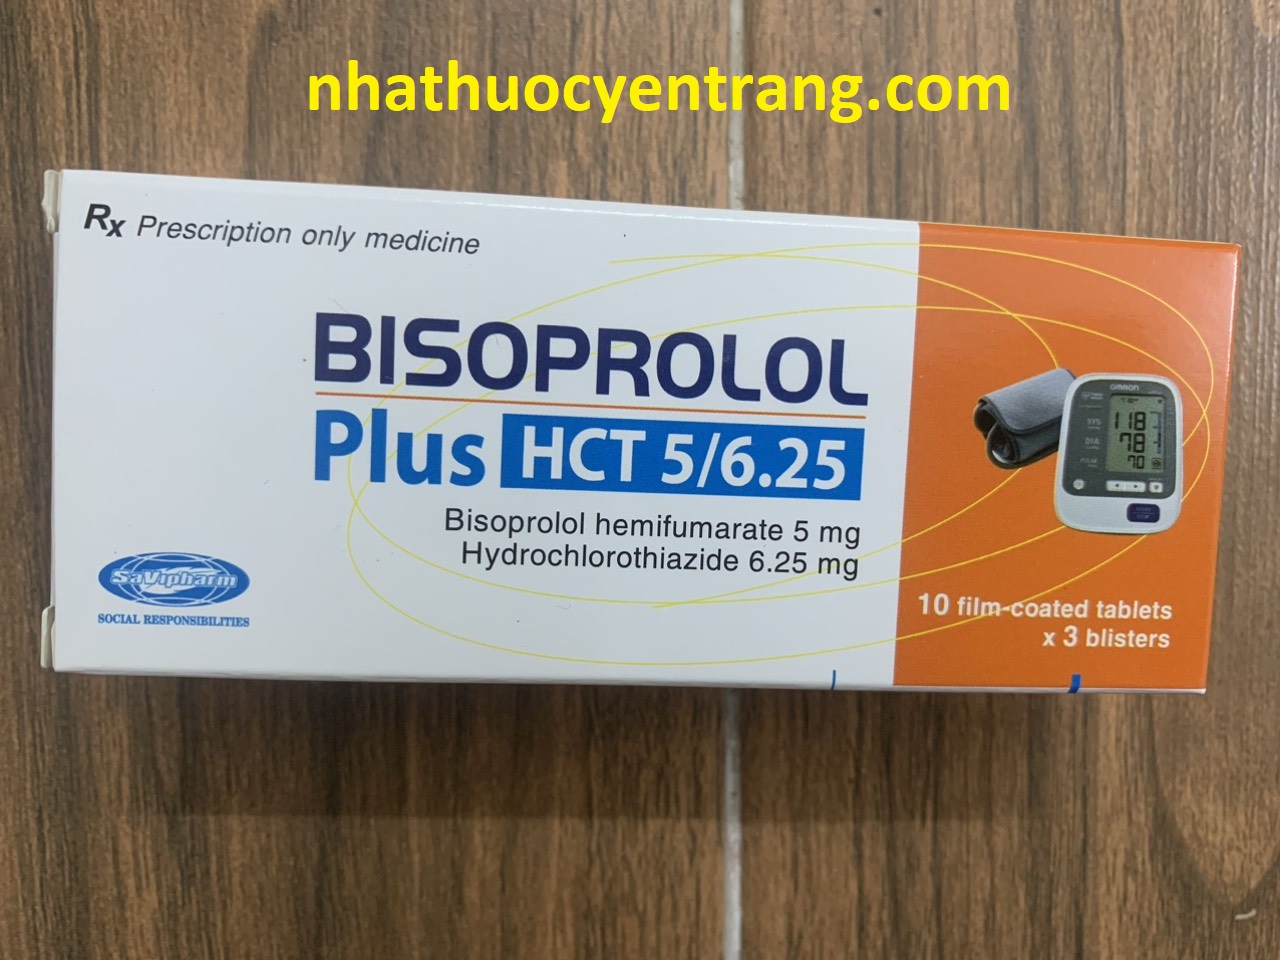 Savi Bisoprolol Plus HCT 5/6.25